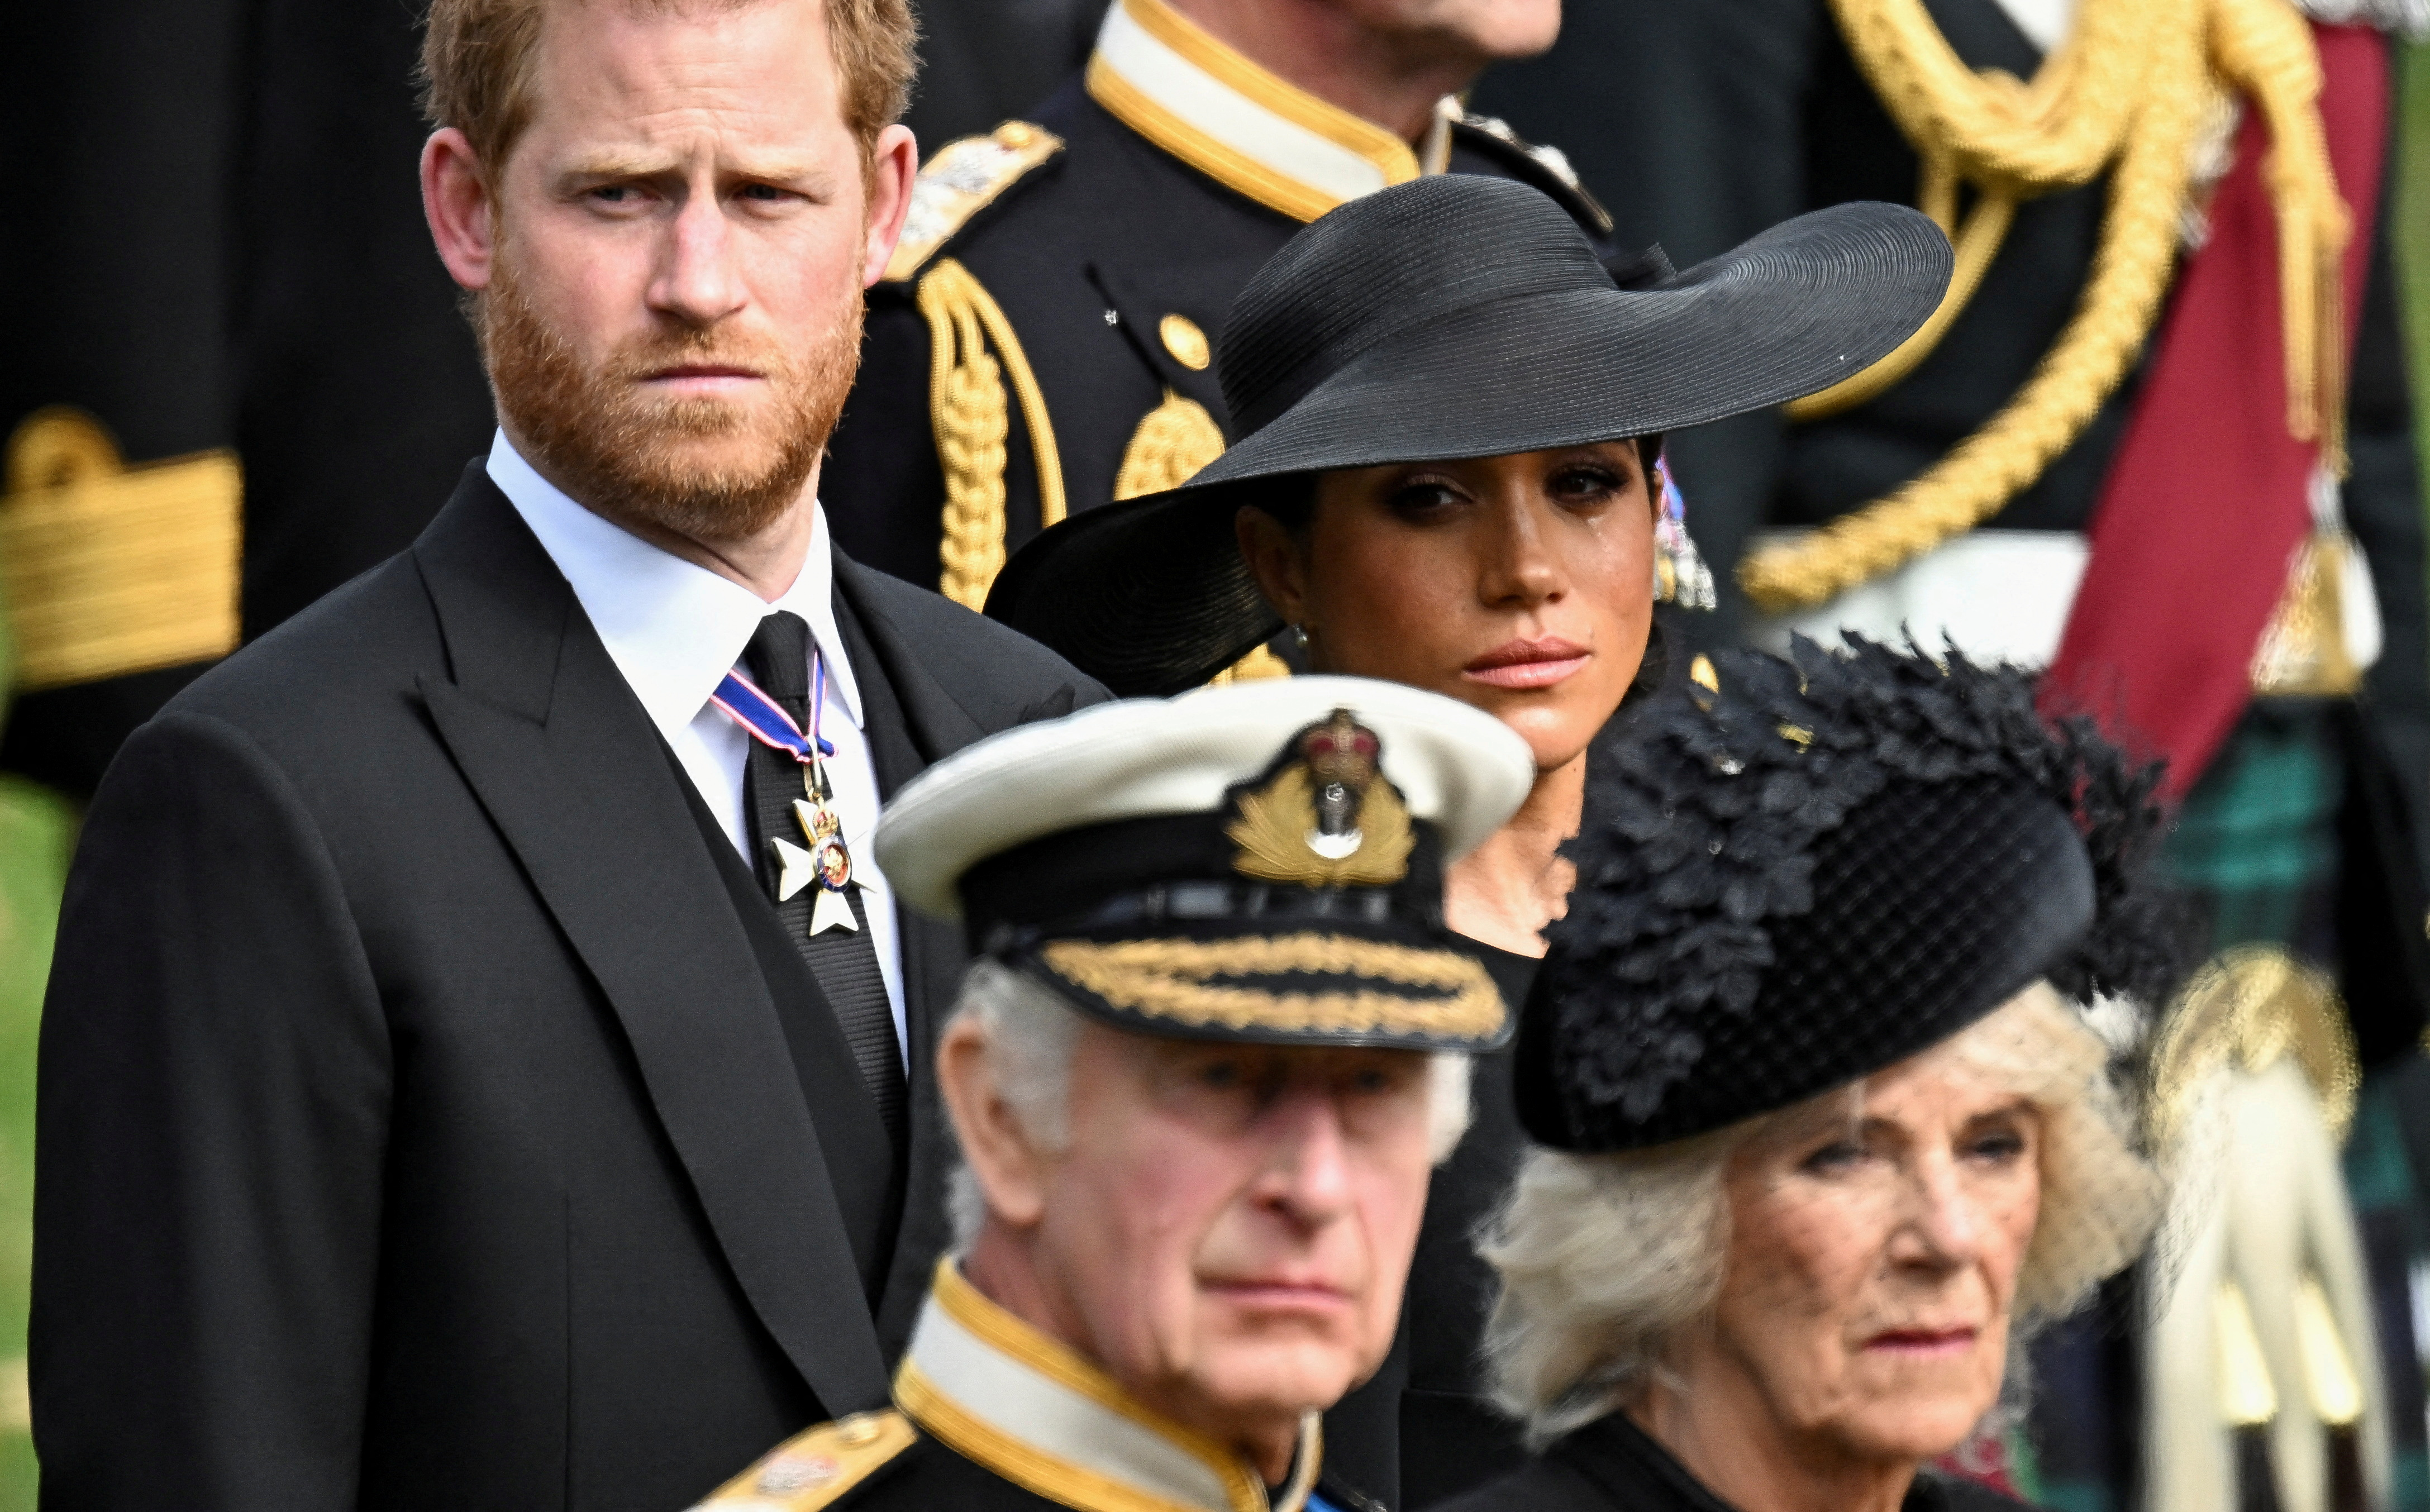 Por qué el rey Carlos III no le quitará los títulos reales al príncipe Harry y Meghan Markle pese a sus duros comentarios contra la familia real británica en su documenta en Netflix (Reuters)